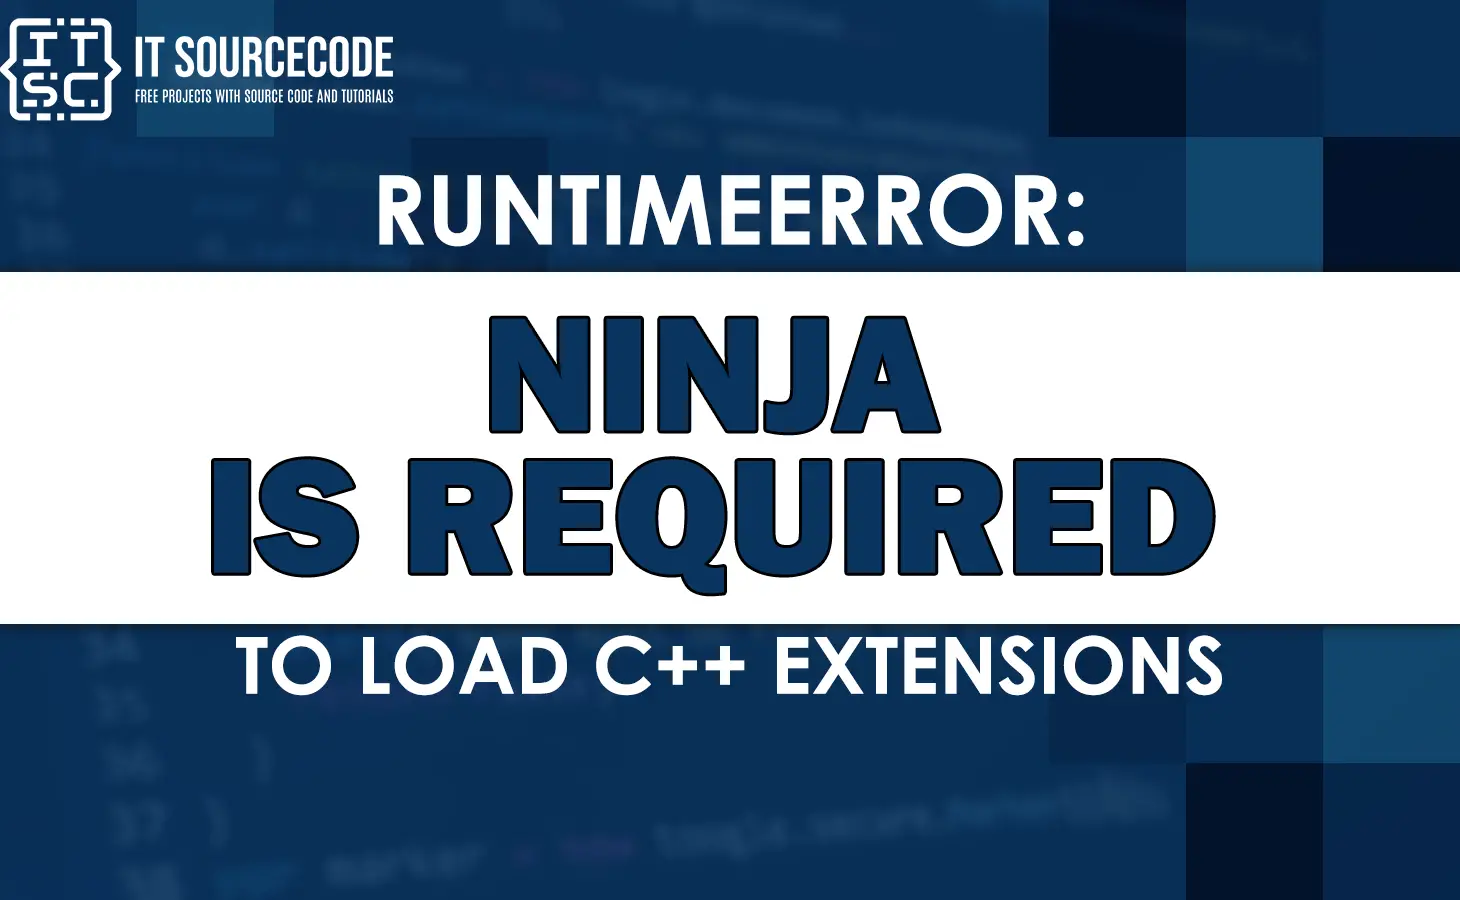 Runtimeerror ninja is required to load c++ extensions